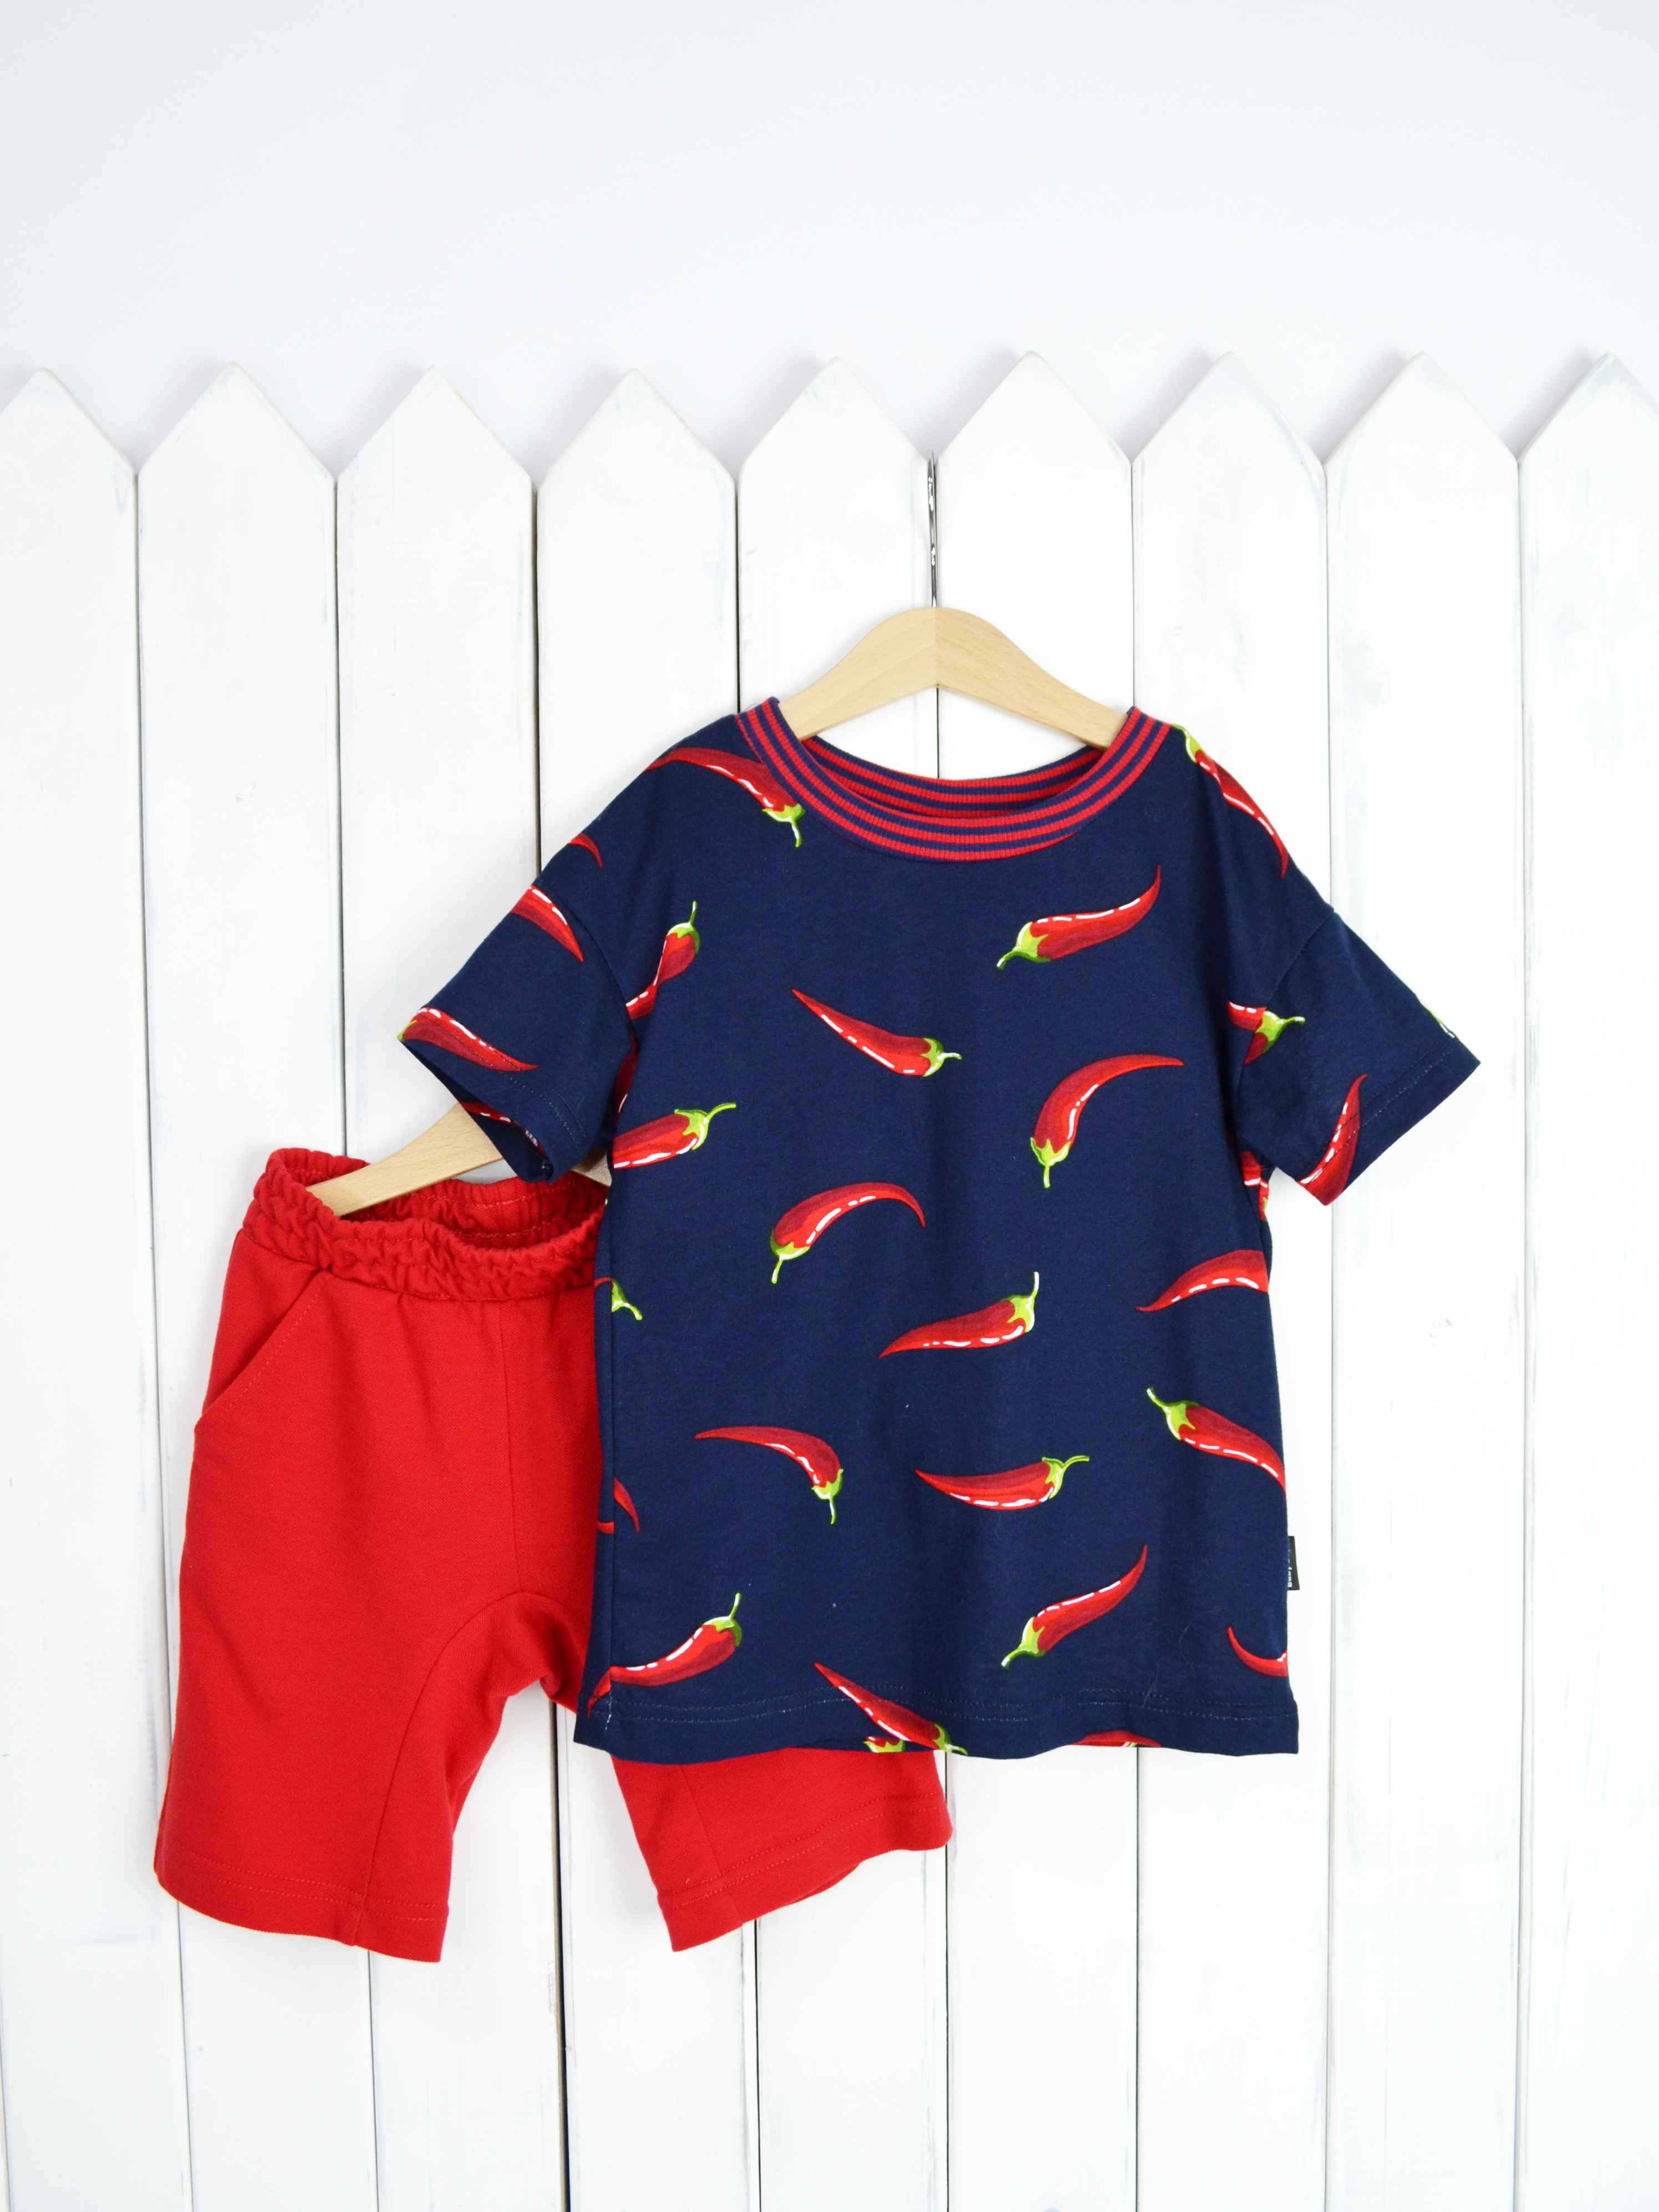 КД354/1-К Комплект детский р.104 Крутые перцы футболка+шорты/красное пике Бэби Бум - Самара 